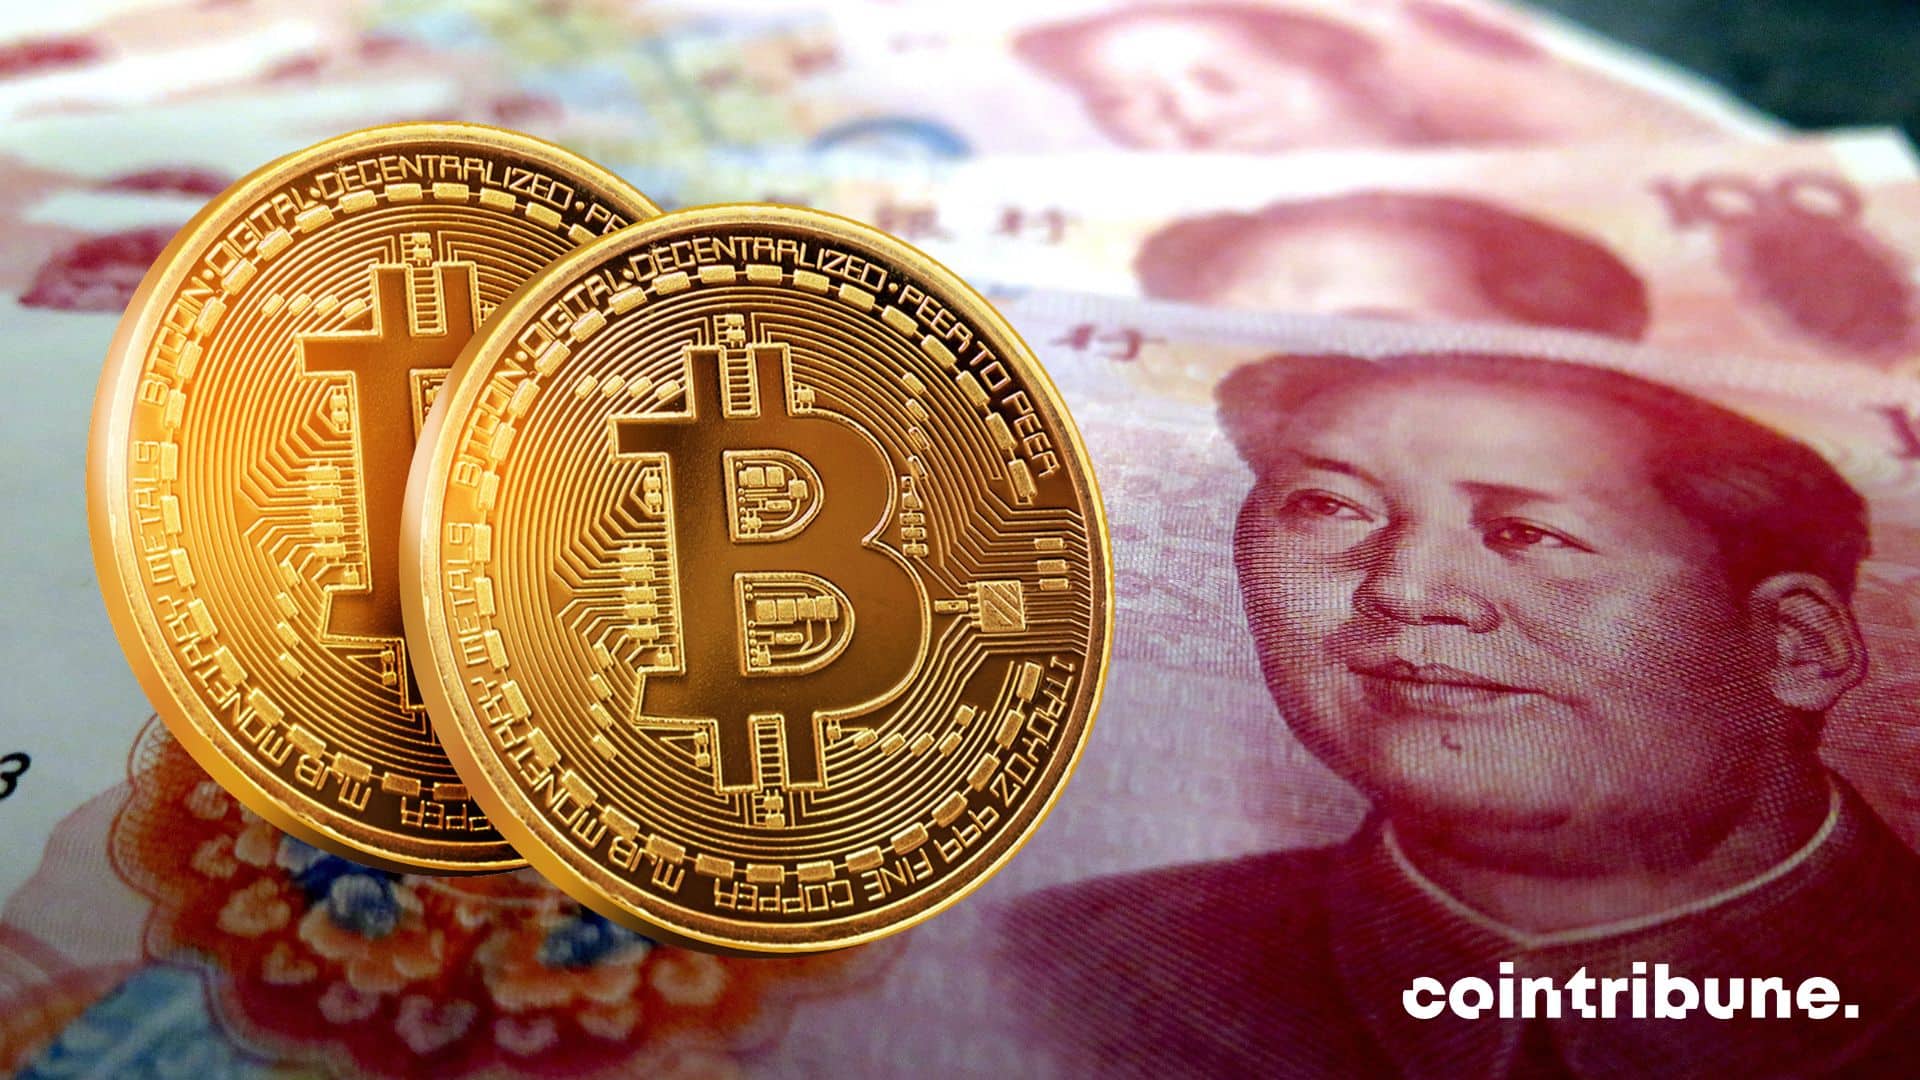 China crypto money laundering